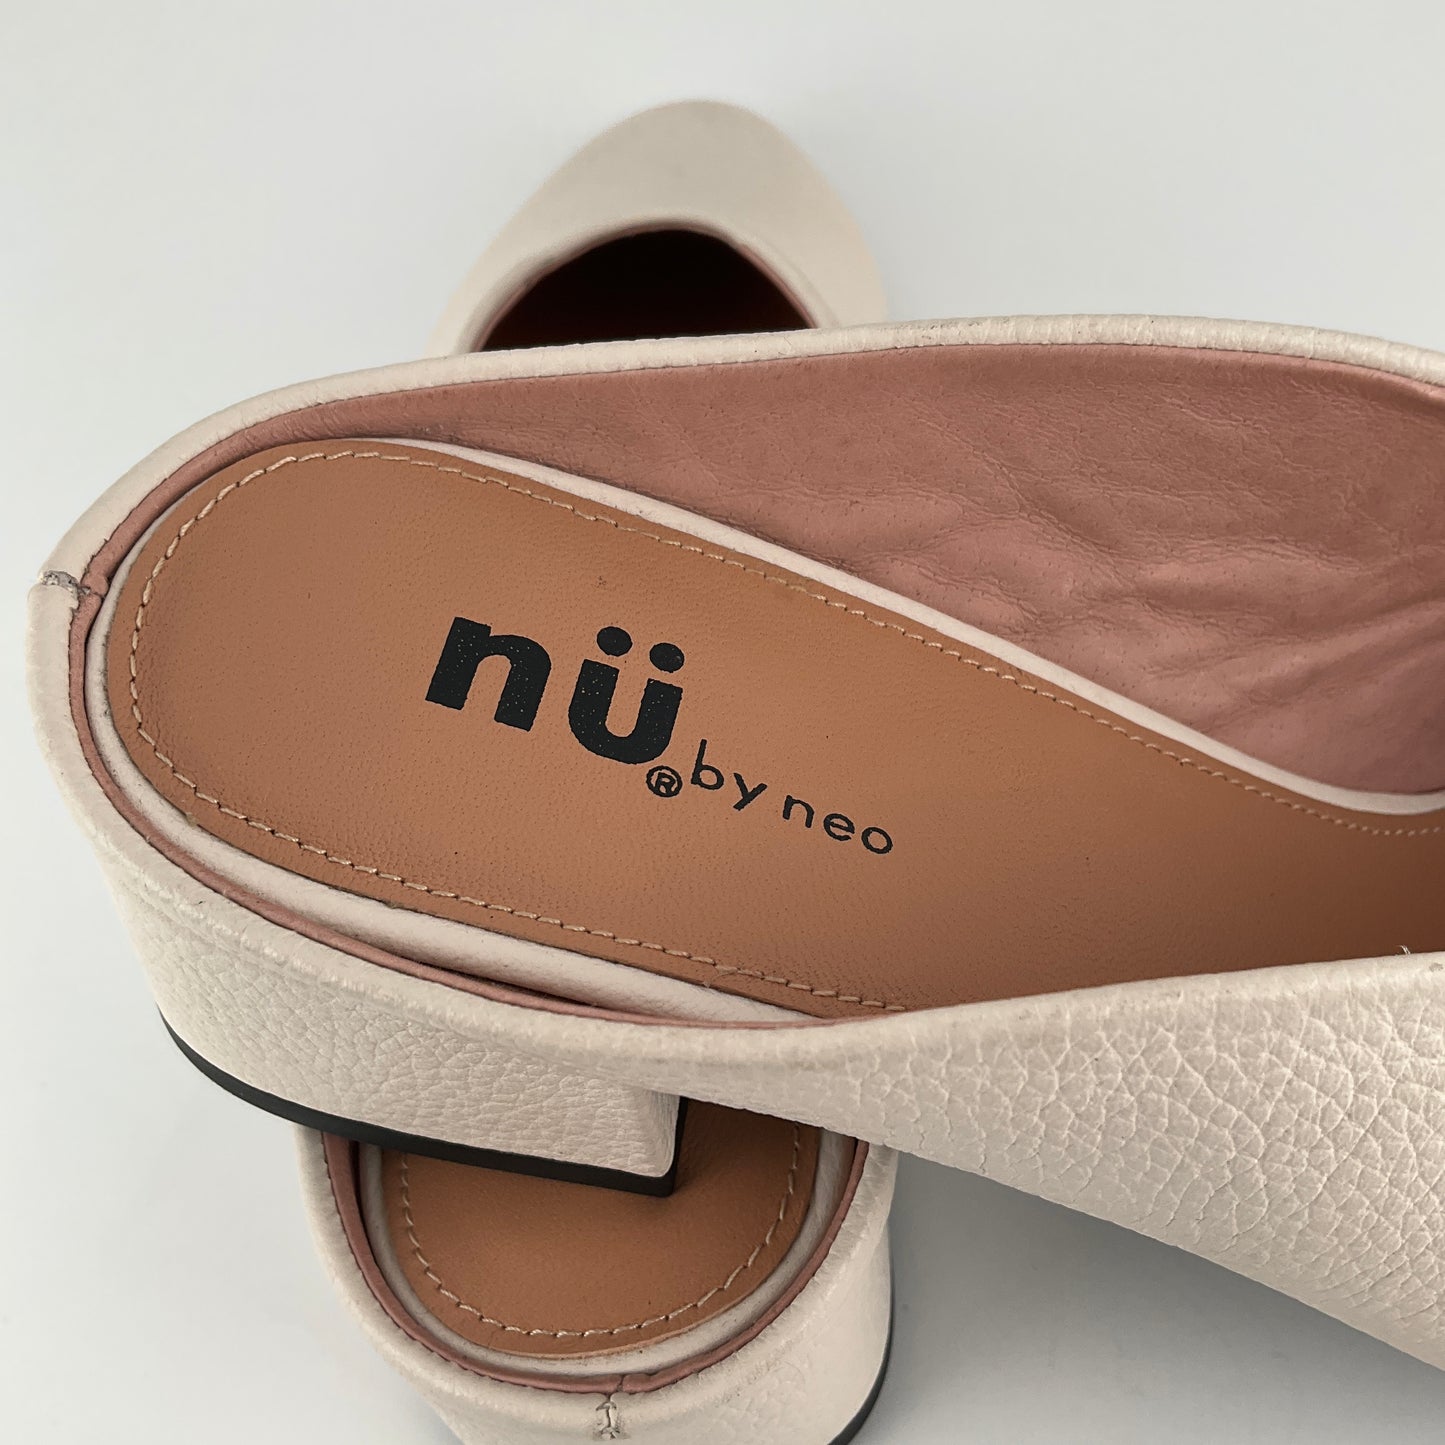 Nu by Neo - Fan Mules - Size 39